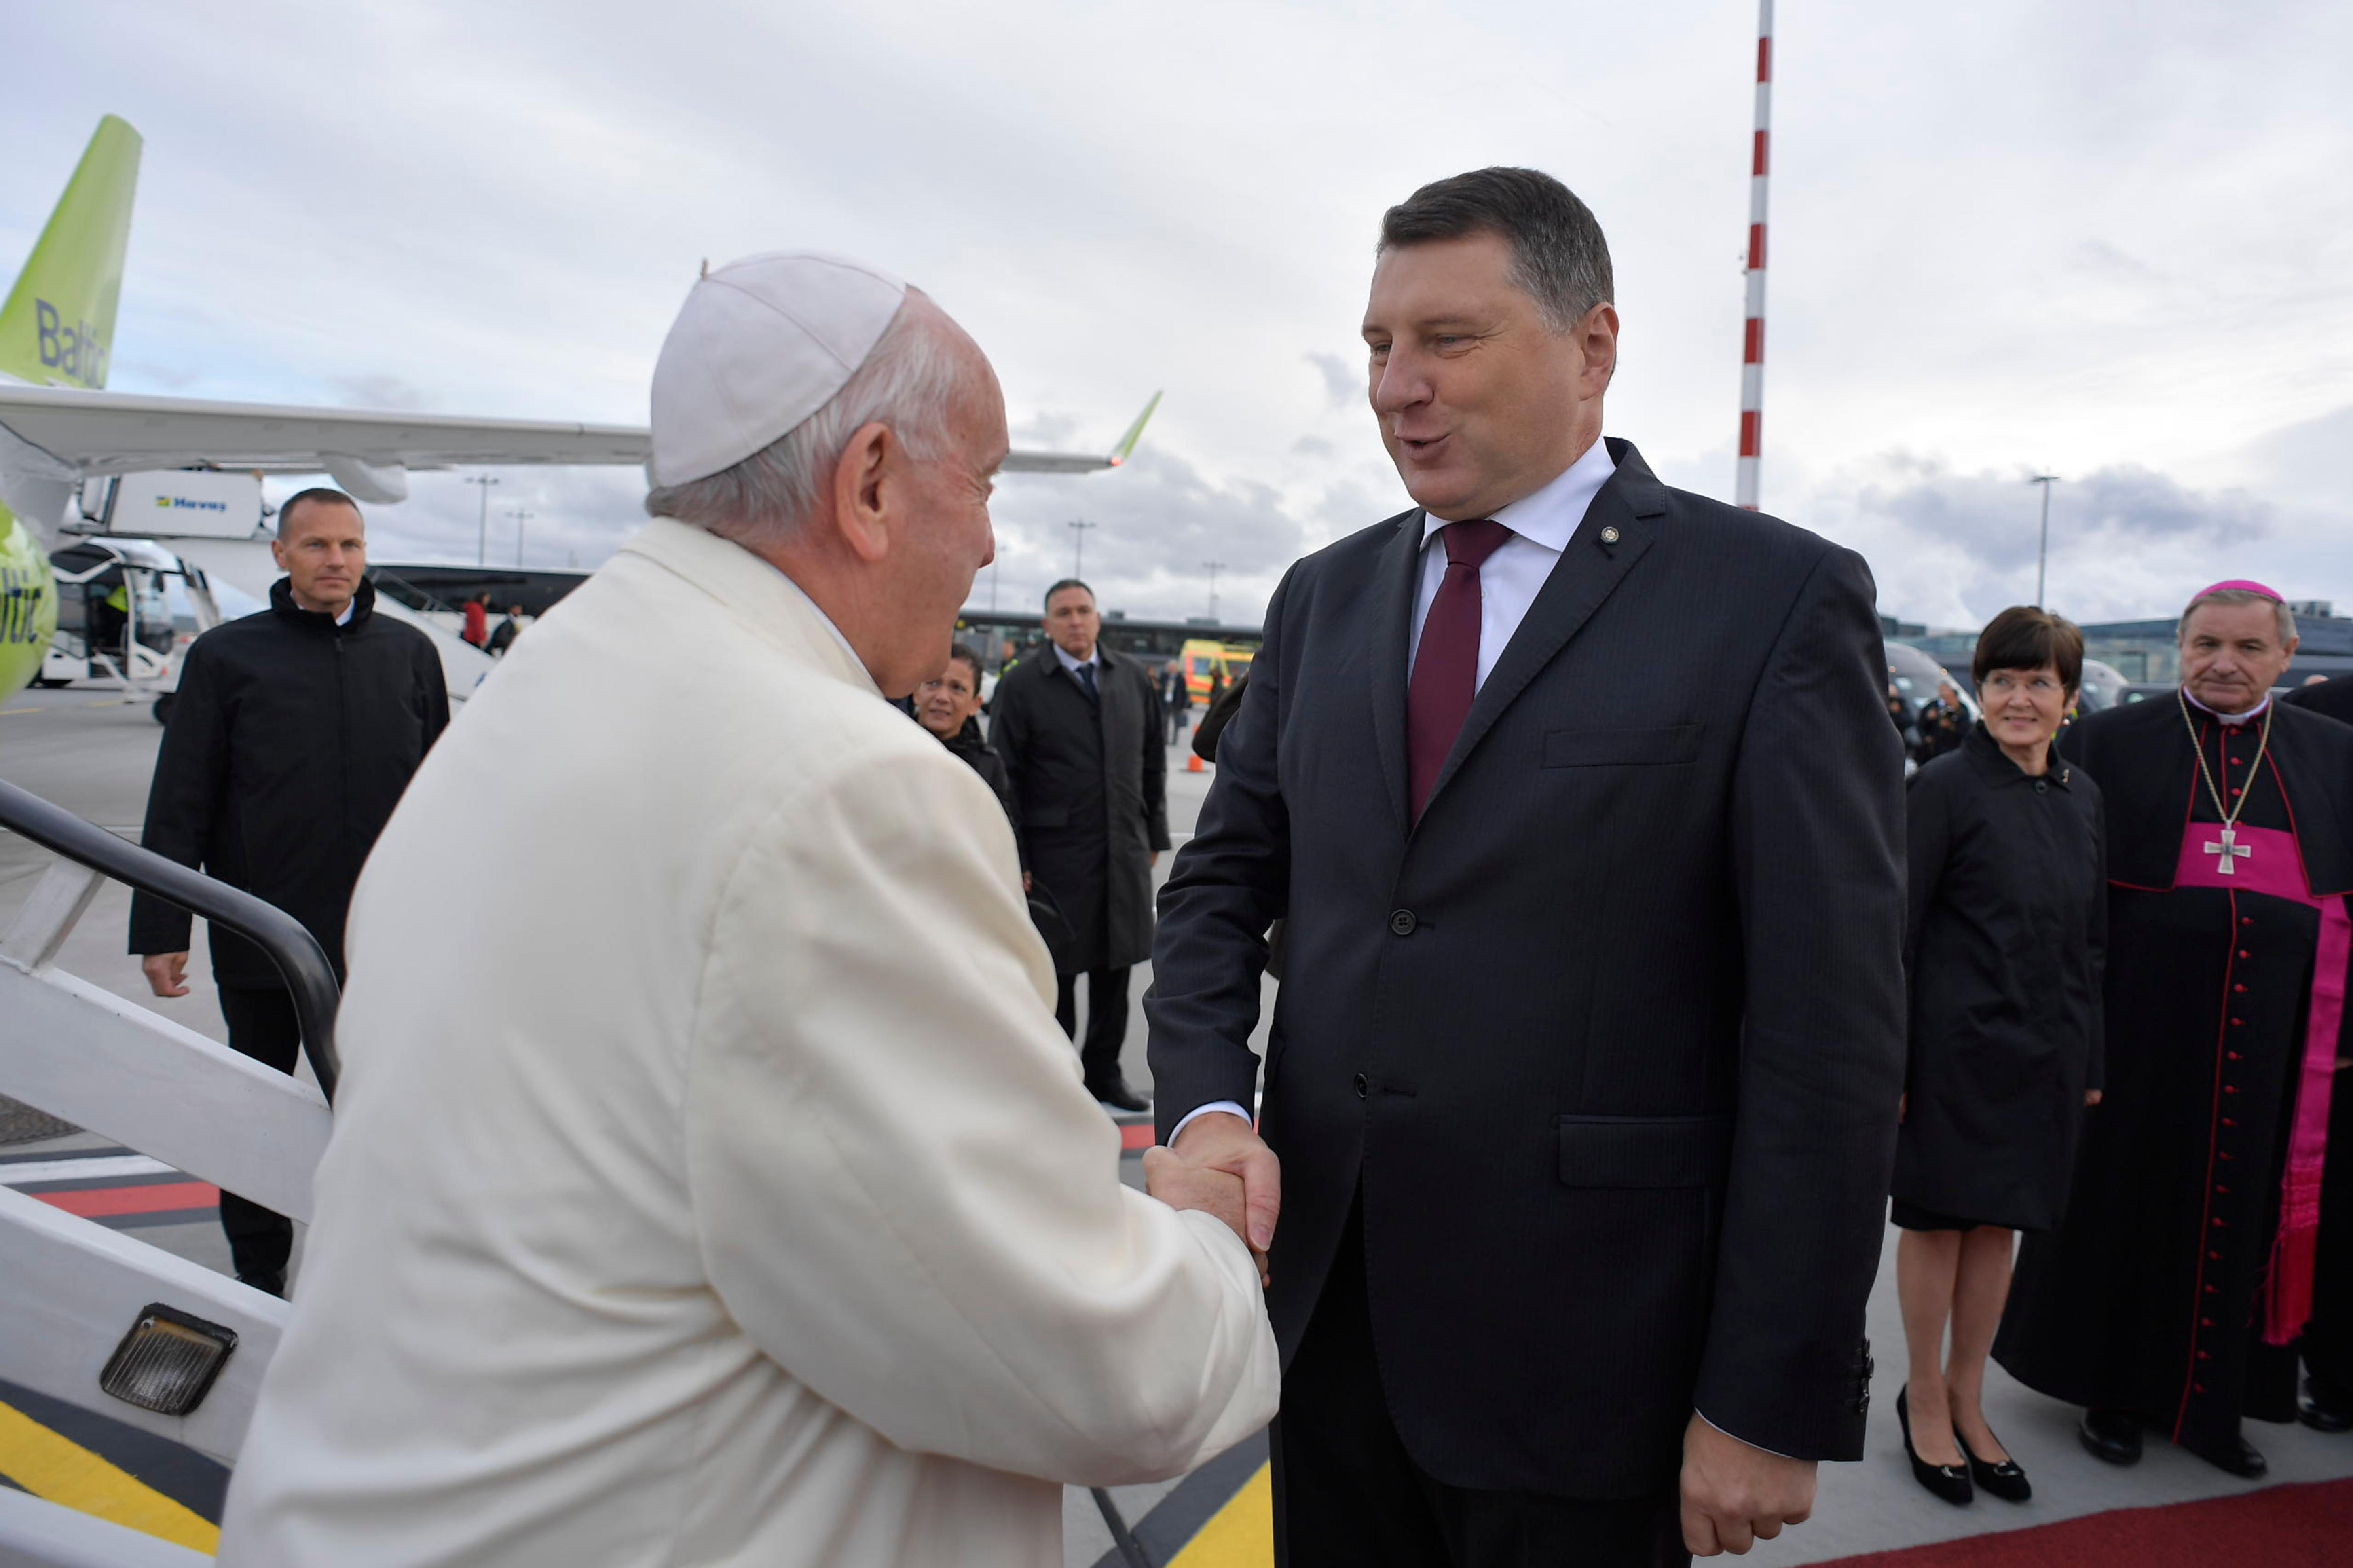 El Presidente Raimonds Vējonis recibe al Papa en Letonia © Vatican Media